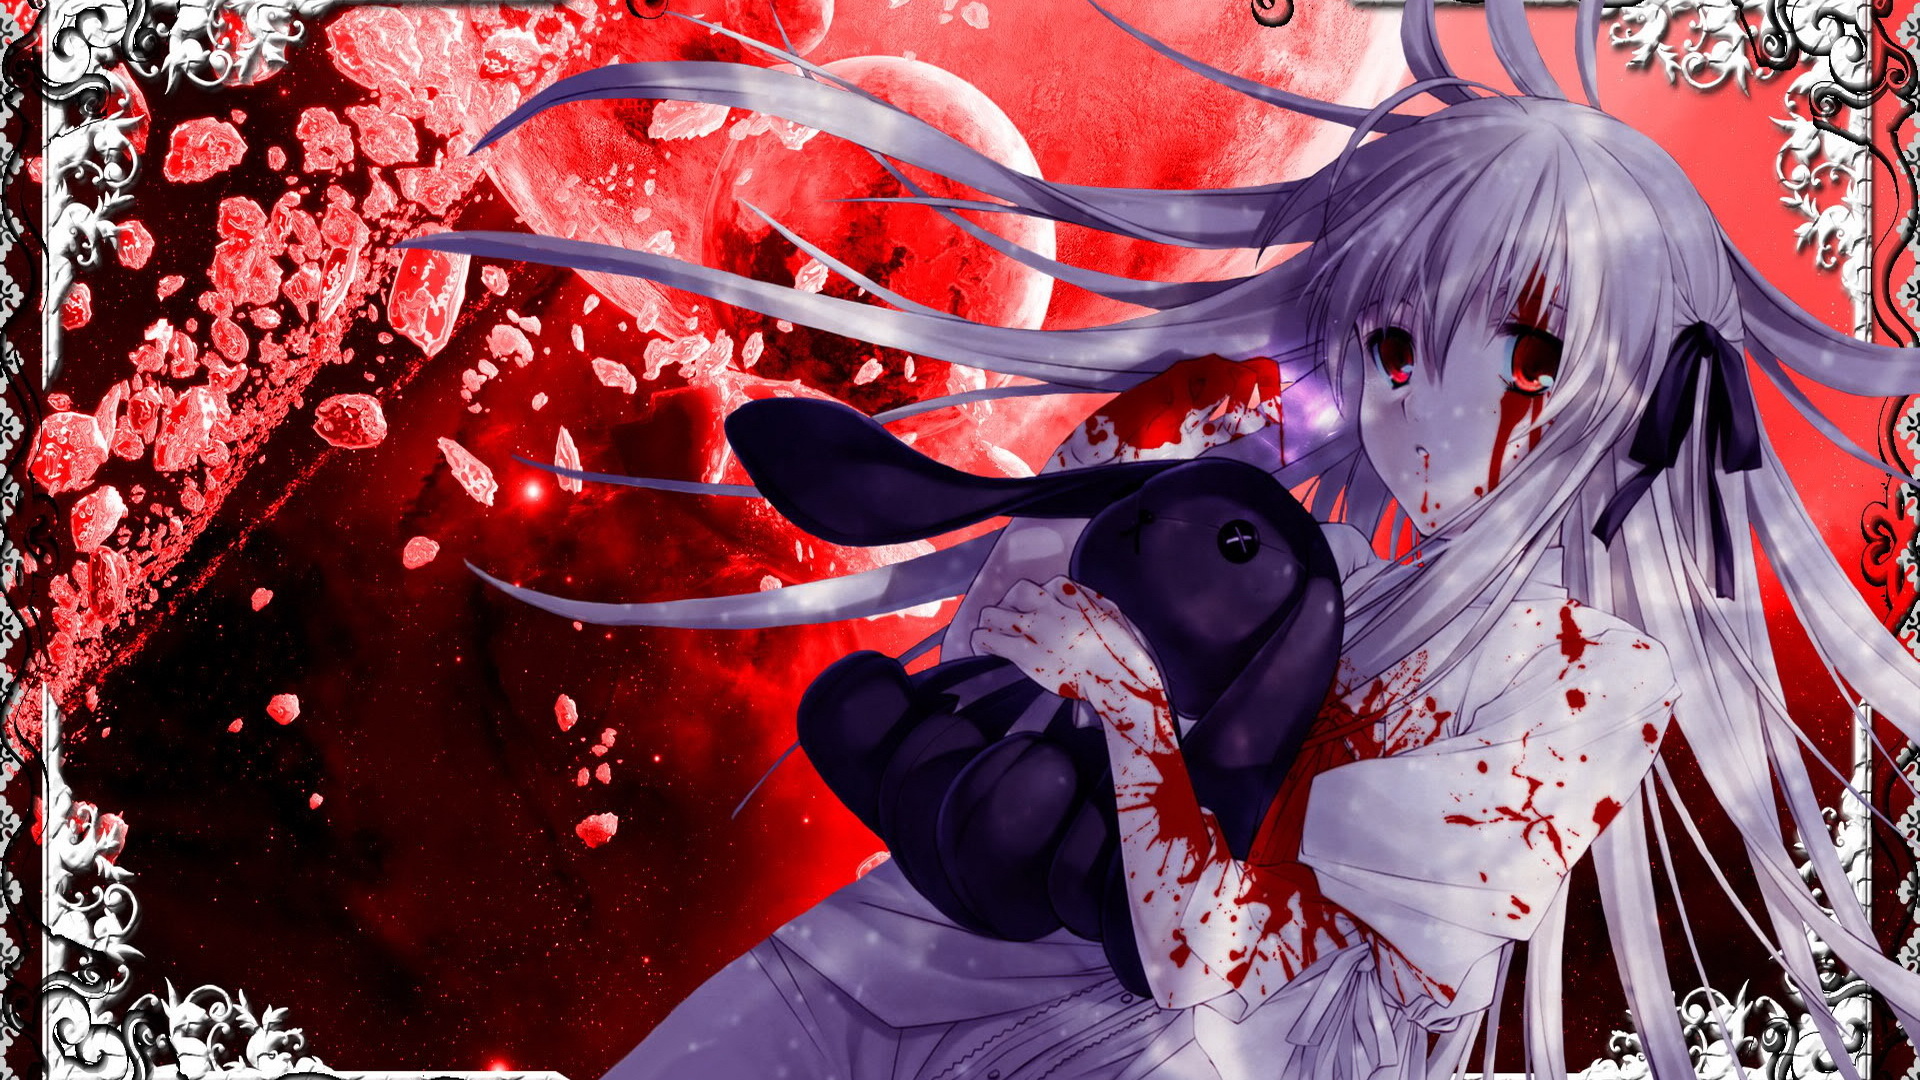 White Hair Anime Girl Blood - 1920x1080 Wallpaper 